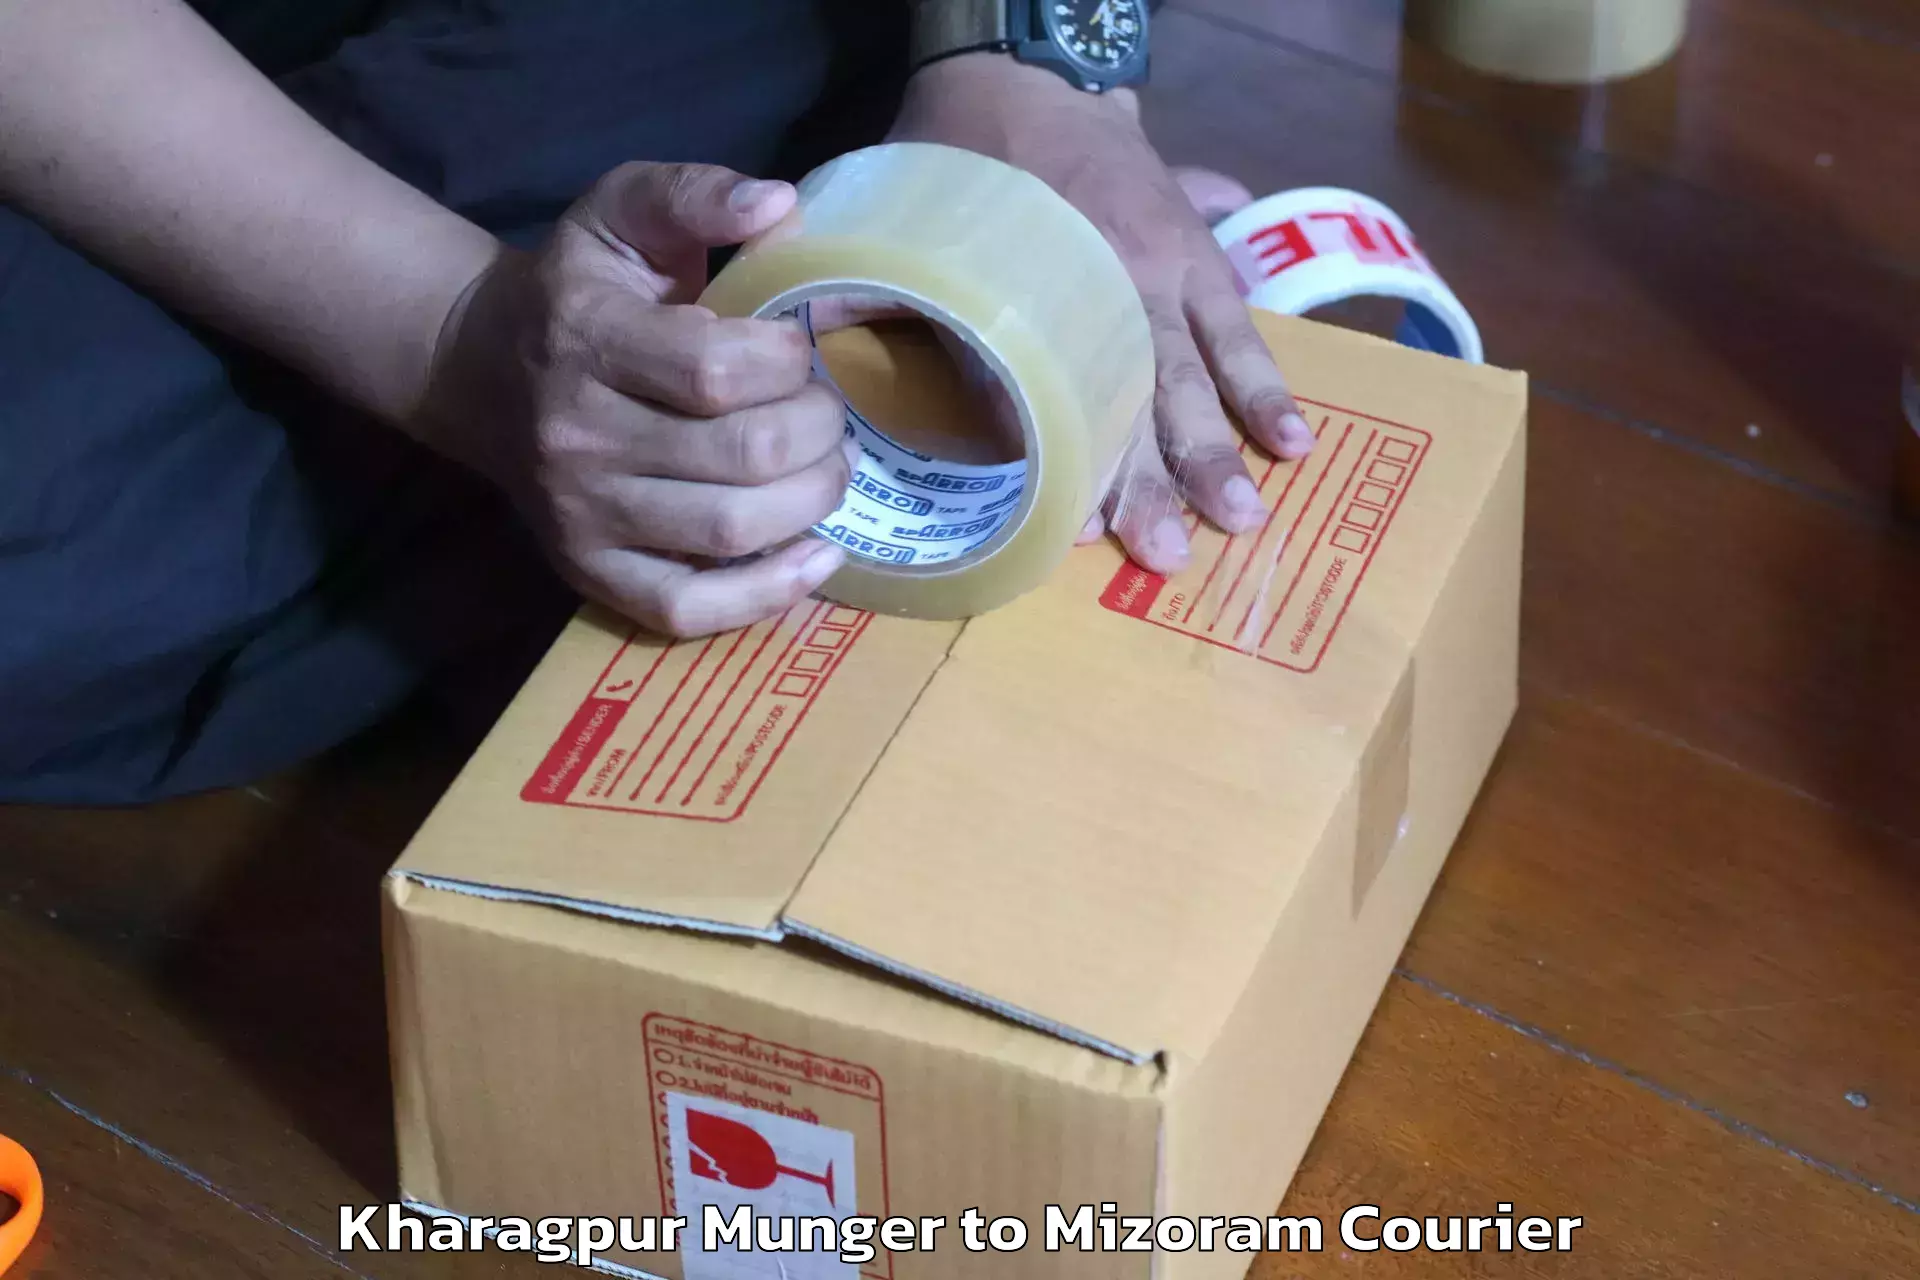 Local furniture movers Kharagpur Munger to Mizoram